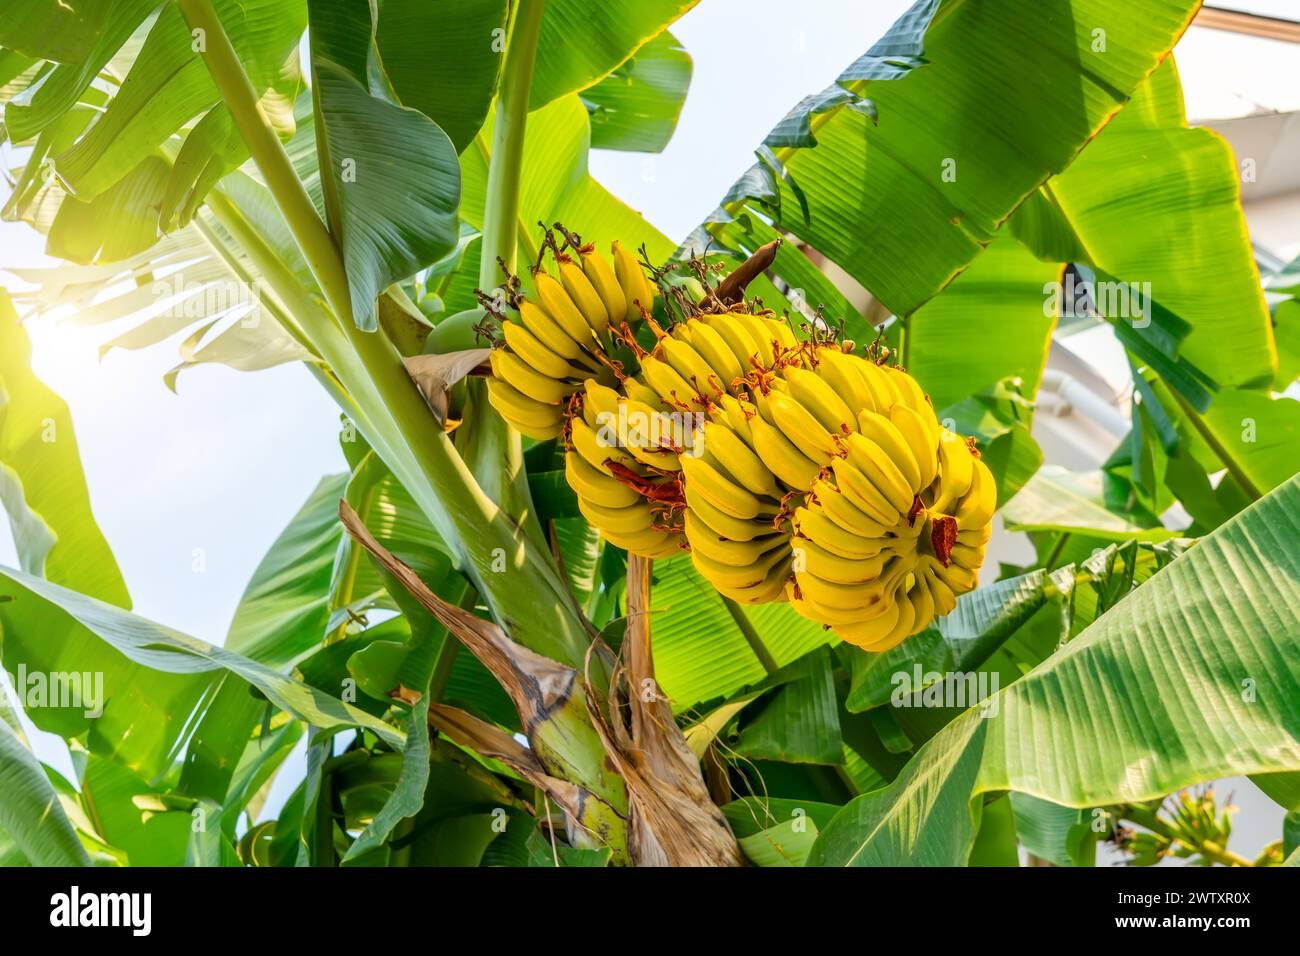 Les bananes jaunissantes mûres pendent en grappes sur les plantations de bananes. Culture de bananes à l'échelle industrielle pour l'exportation mondiale Banque D'Images